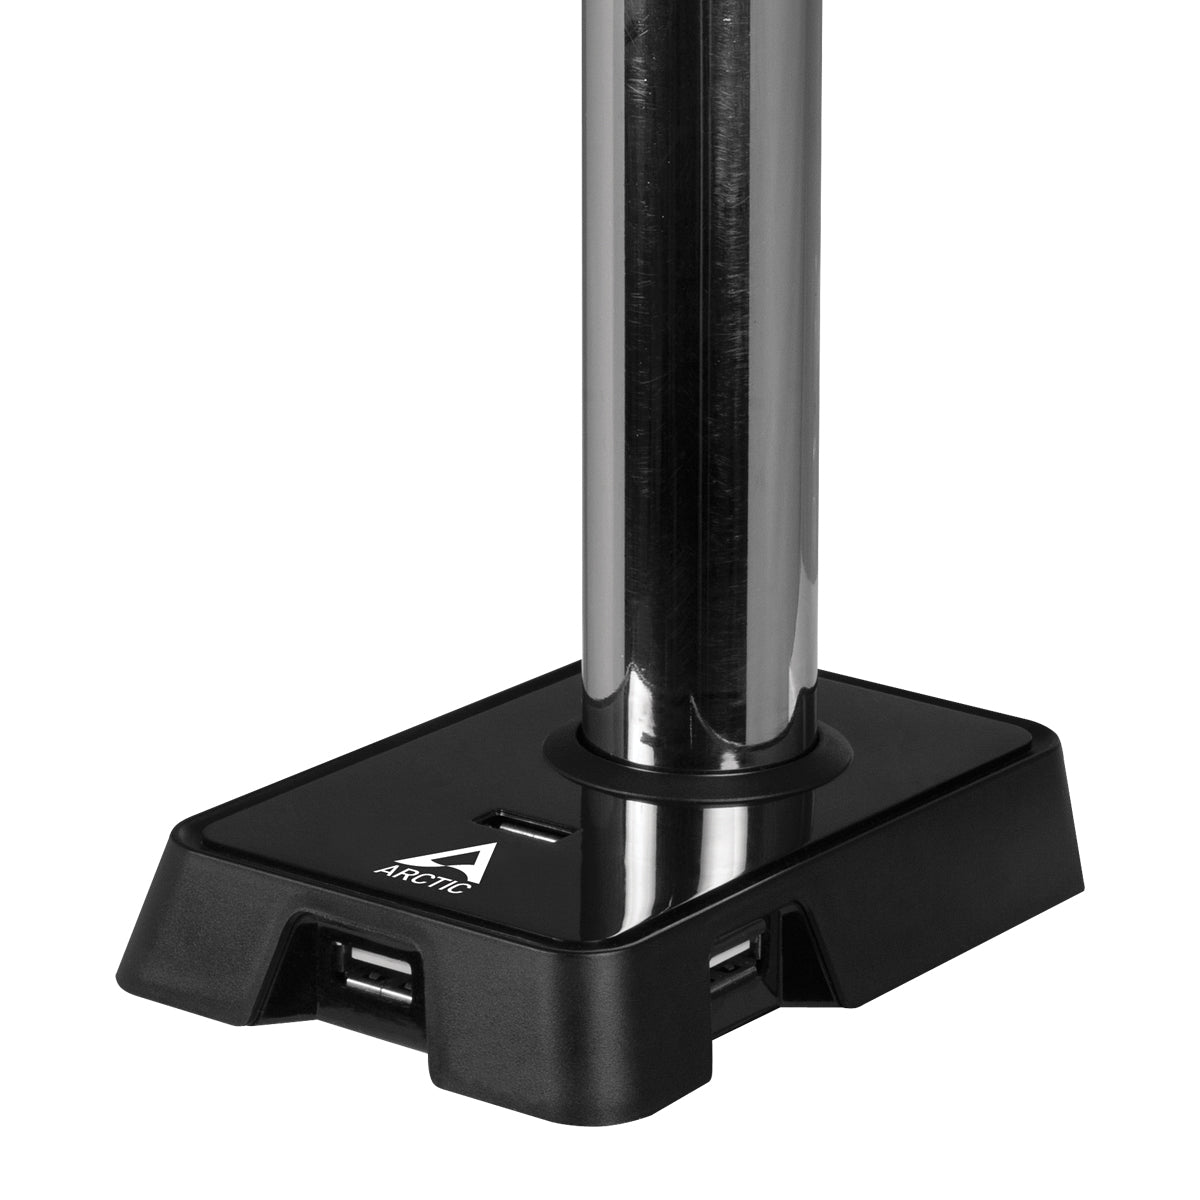 ARCTIC Z1 (Gen 3) Supporto Staffa Montaggio VESA Da Tavolo Per Monitor Fino a 43/49" + Hub USB - Disponibile in 2-4 giorni lavorativi